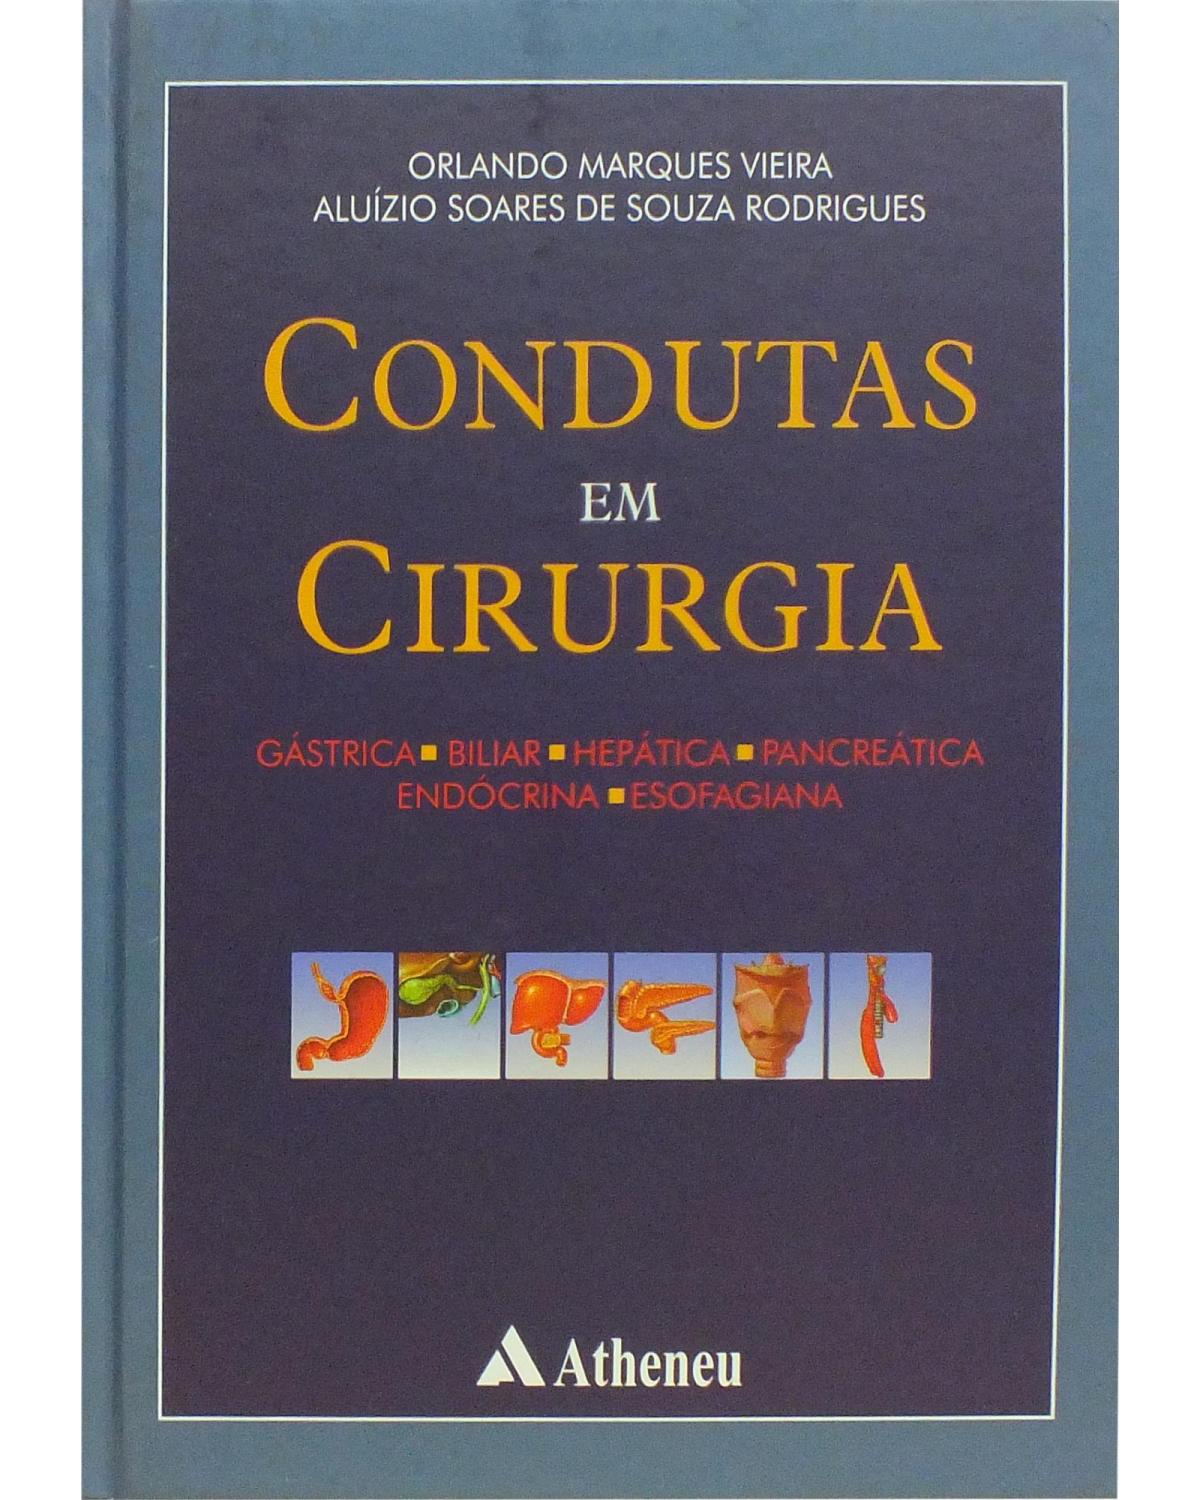 Condutas em cirurgia: Gástrica, biliar, hepática, pancreática, endócrina, esofagiana - 1ª Edição | 2001